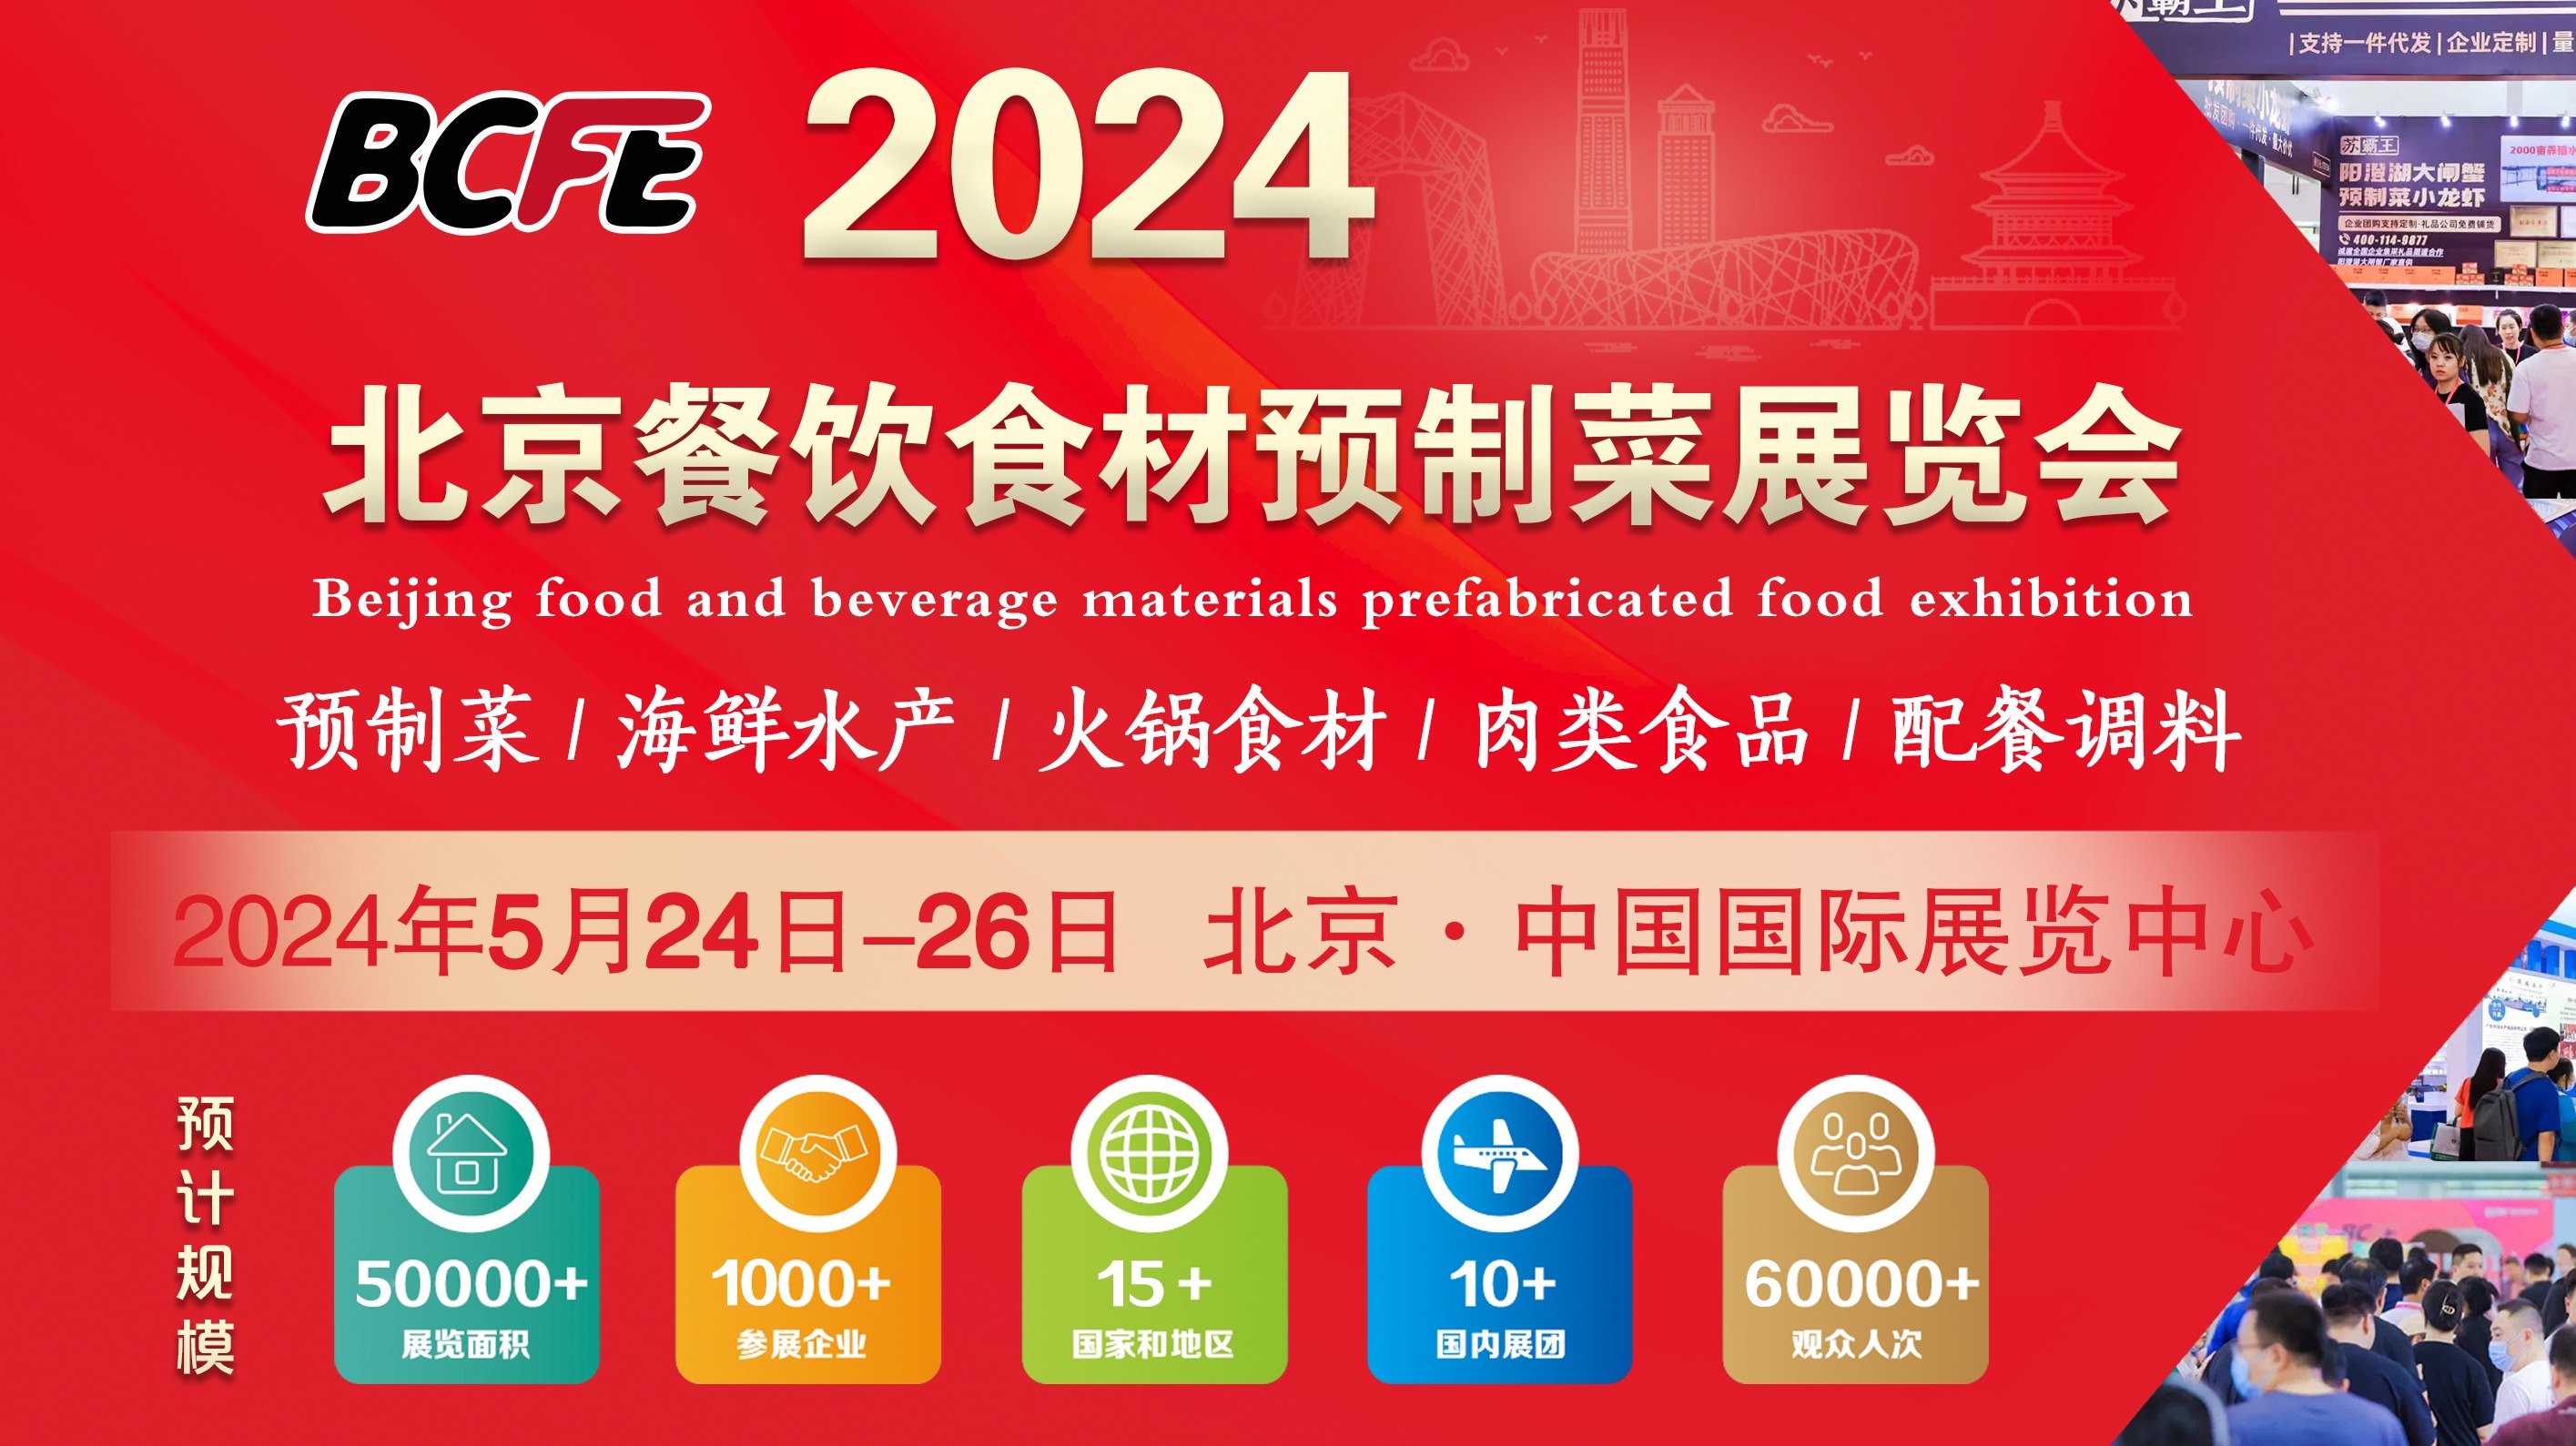 2024年餐饮食材展-北京火锅食材展-北京餐饮食材预制菜展